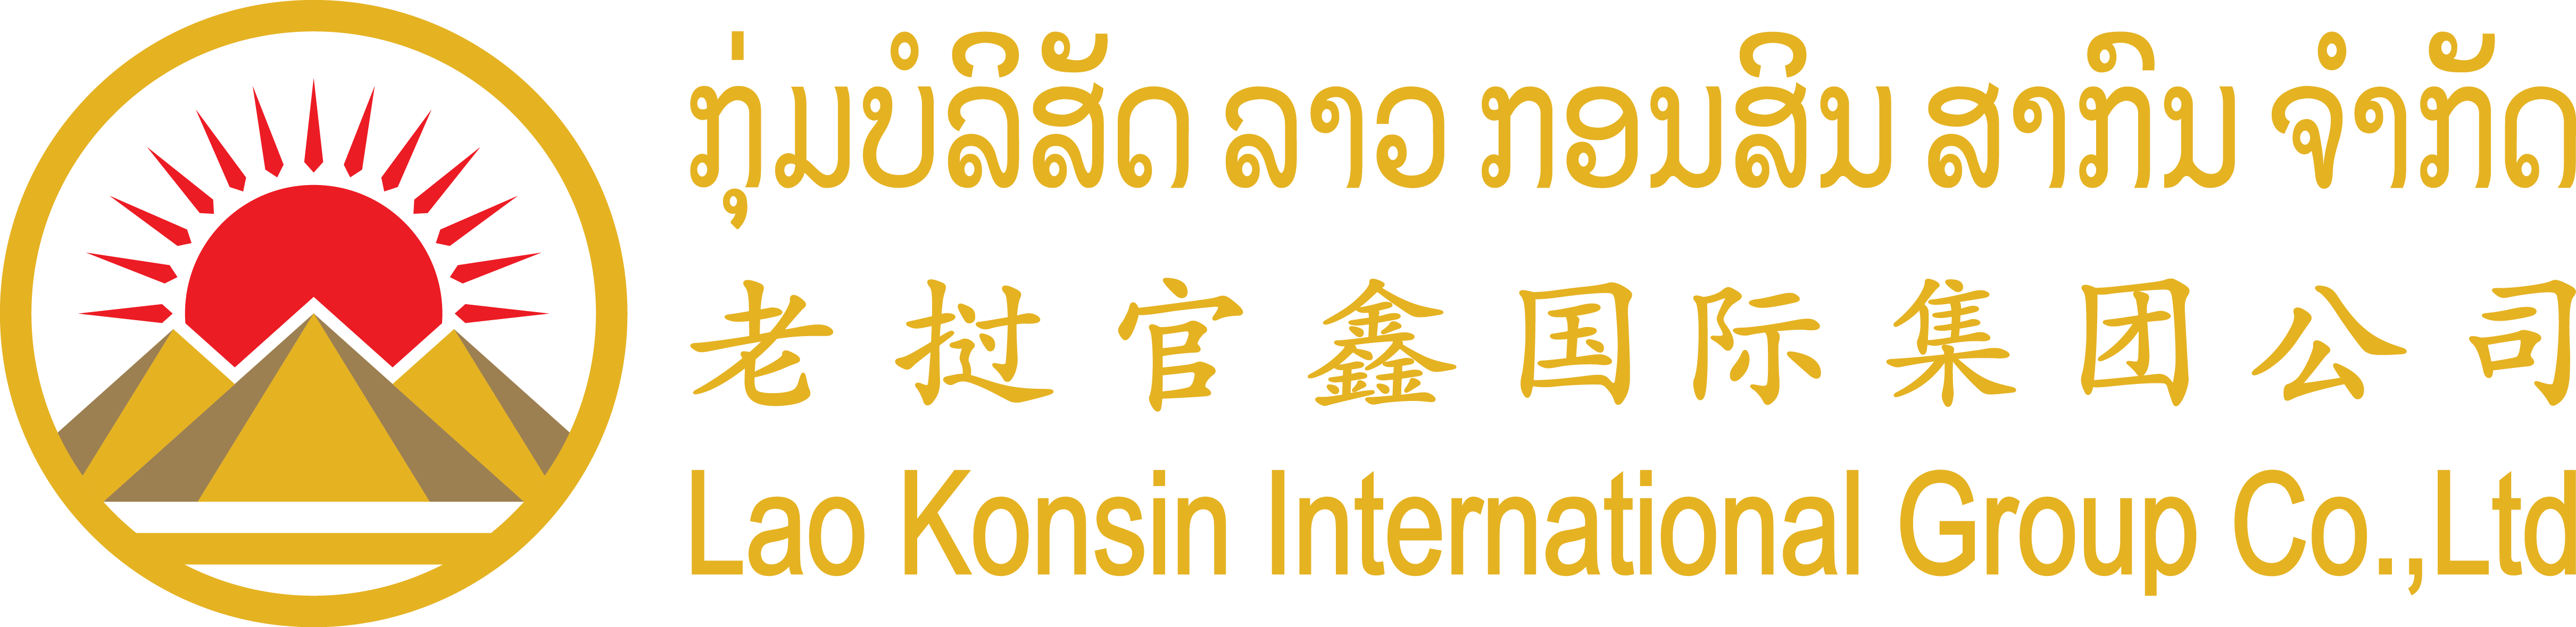 www.laokonsin.online